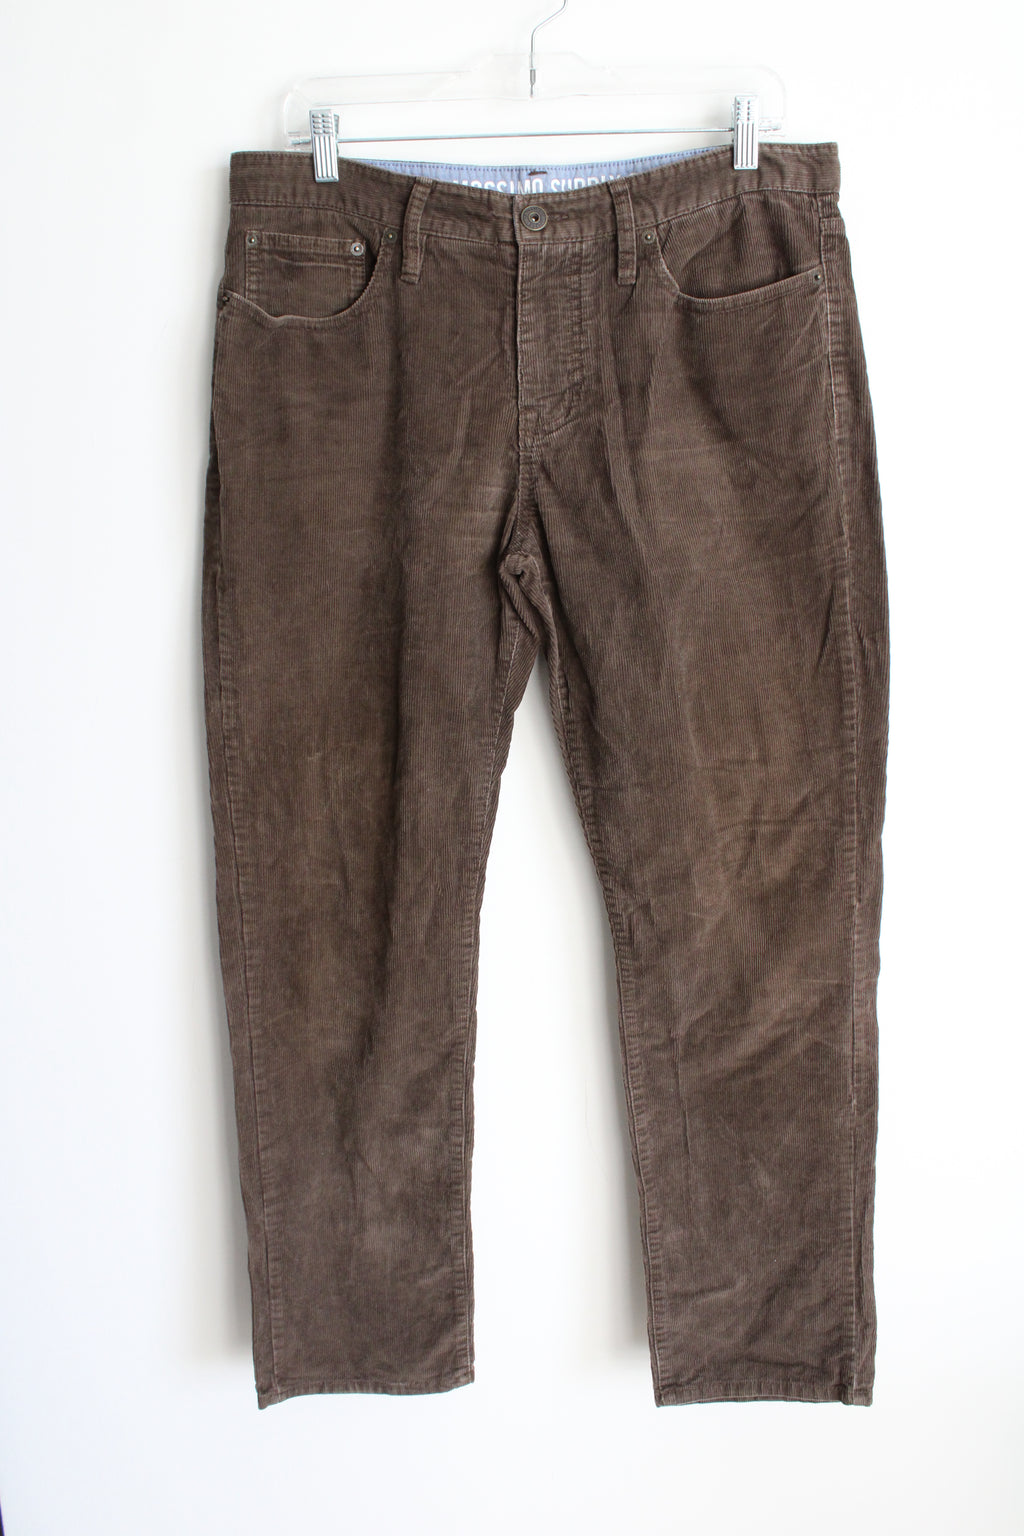 Mossimo Brown Corduroy Pants | 34X30